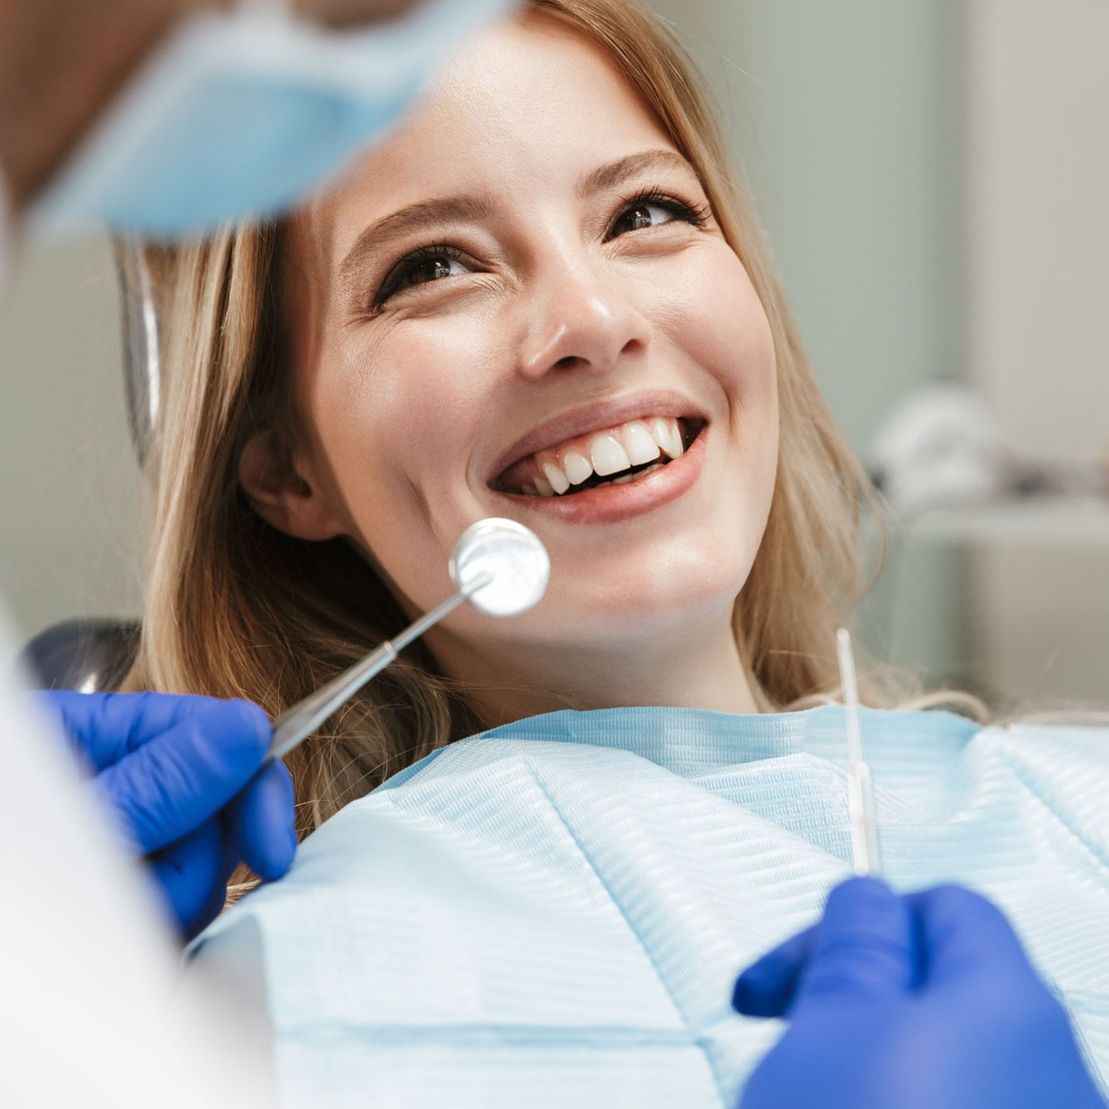 Ästhetische Zahnheilkunde von Dental-Ästhetik Center Dr. med. dent. Uwe Lucas in Schüttorf